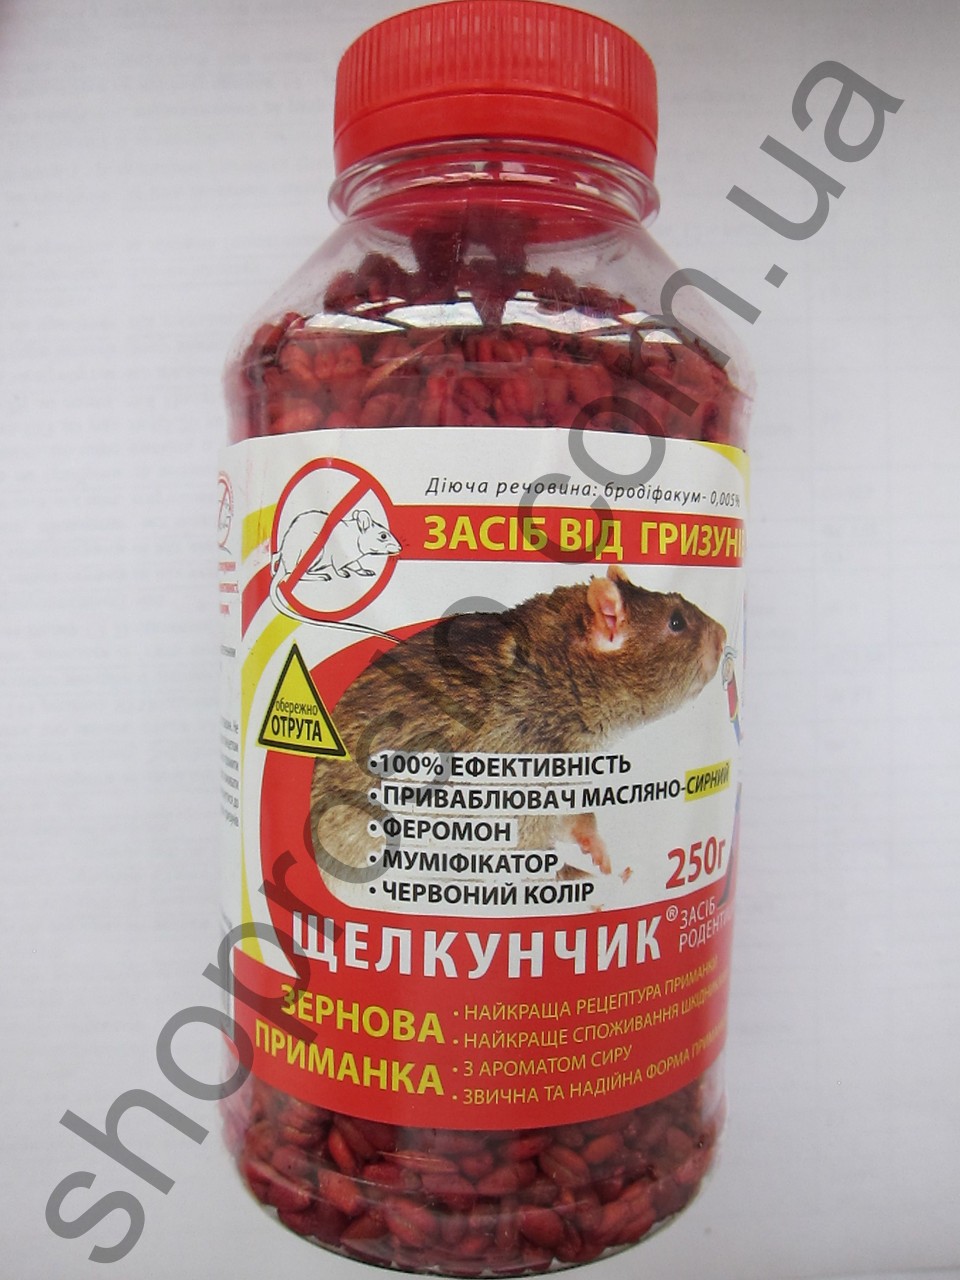 Родентицид Щелкунчик зерновая приманка, сырная, ПЭТ бутылка (красная), (Украина), 250 г